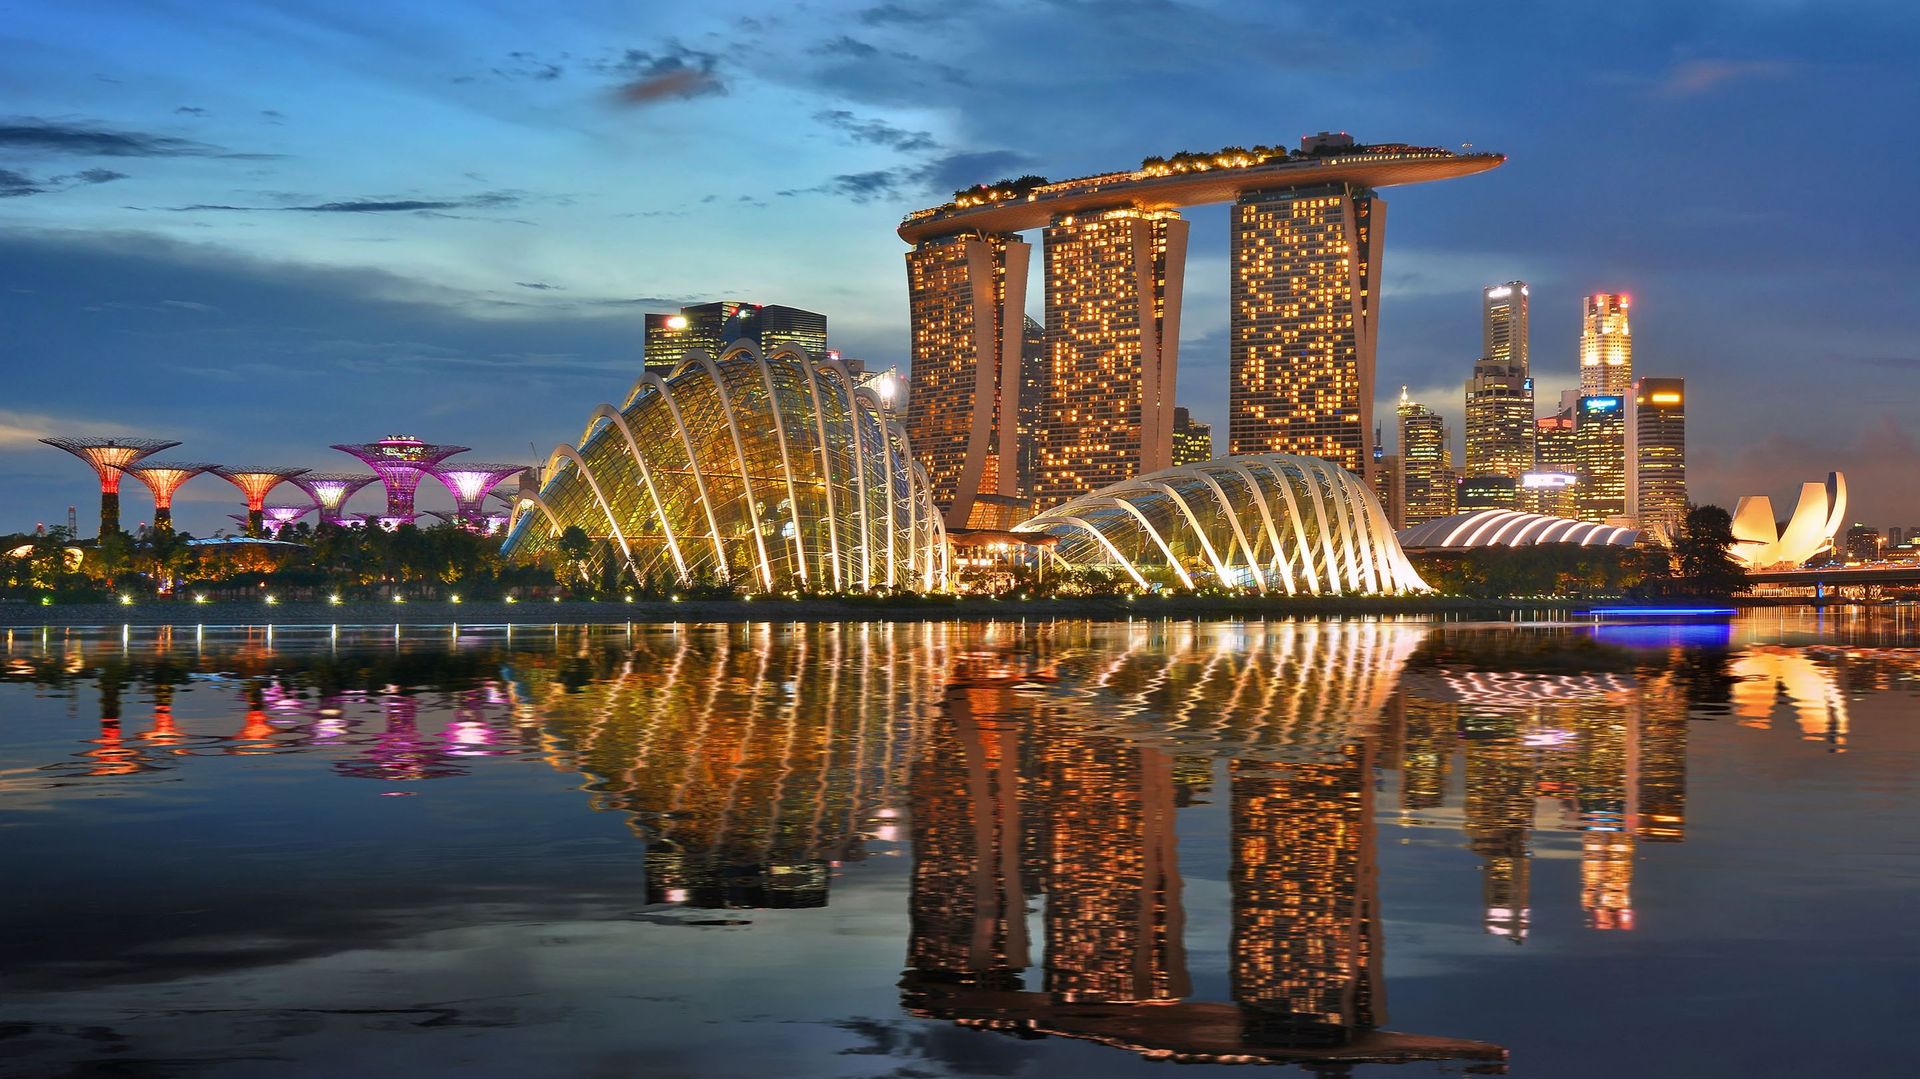 Sotheby’s espère profiter du pouvoir d’attractivité de Singapour lors de la vente aux enchères d’art moderne et contemporain qu’elle y organise le 28 août prochain.